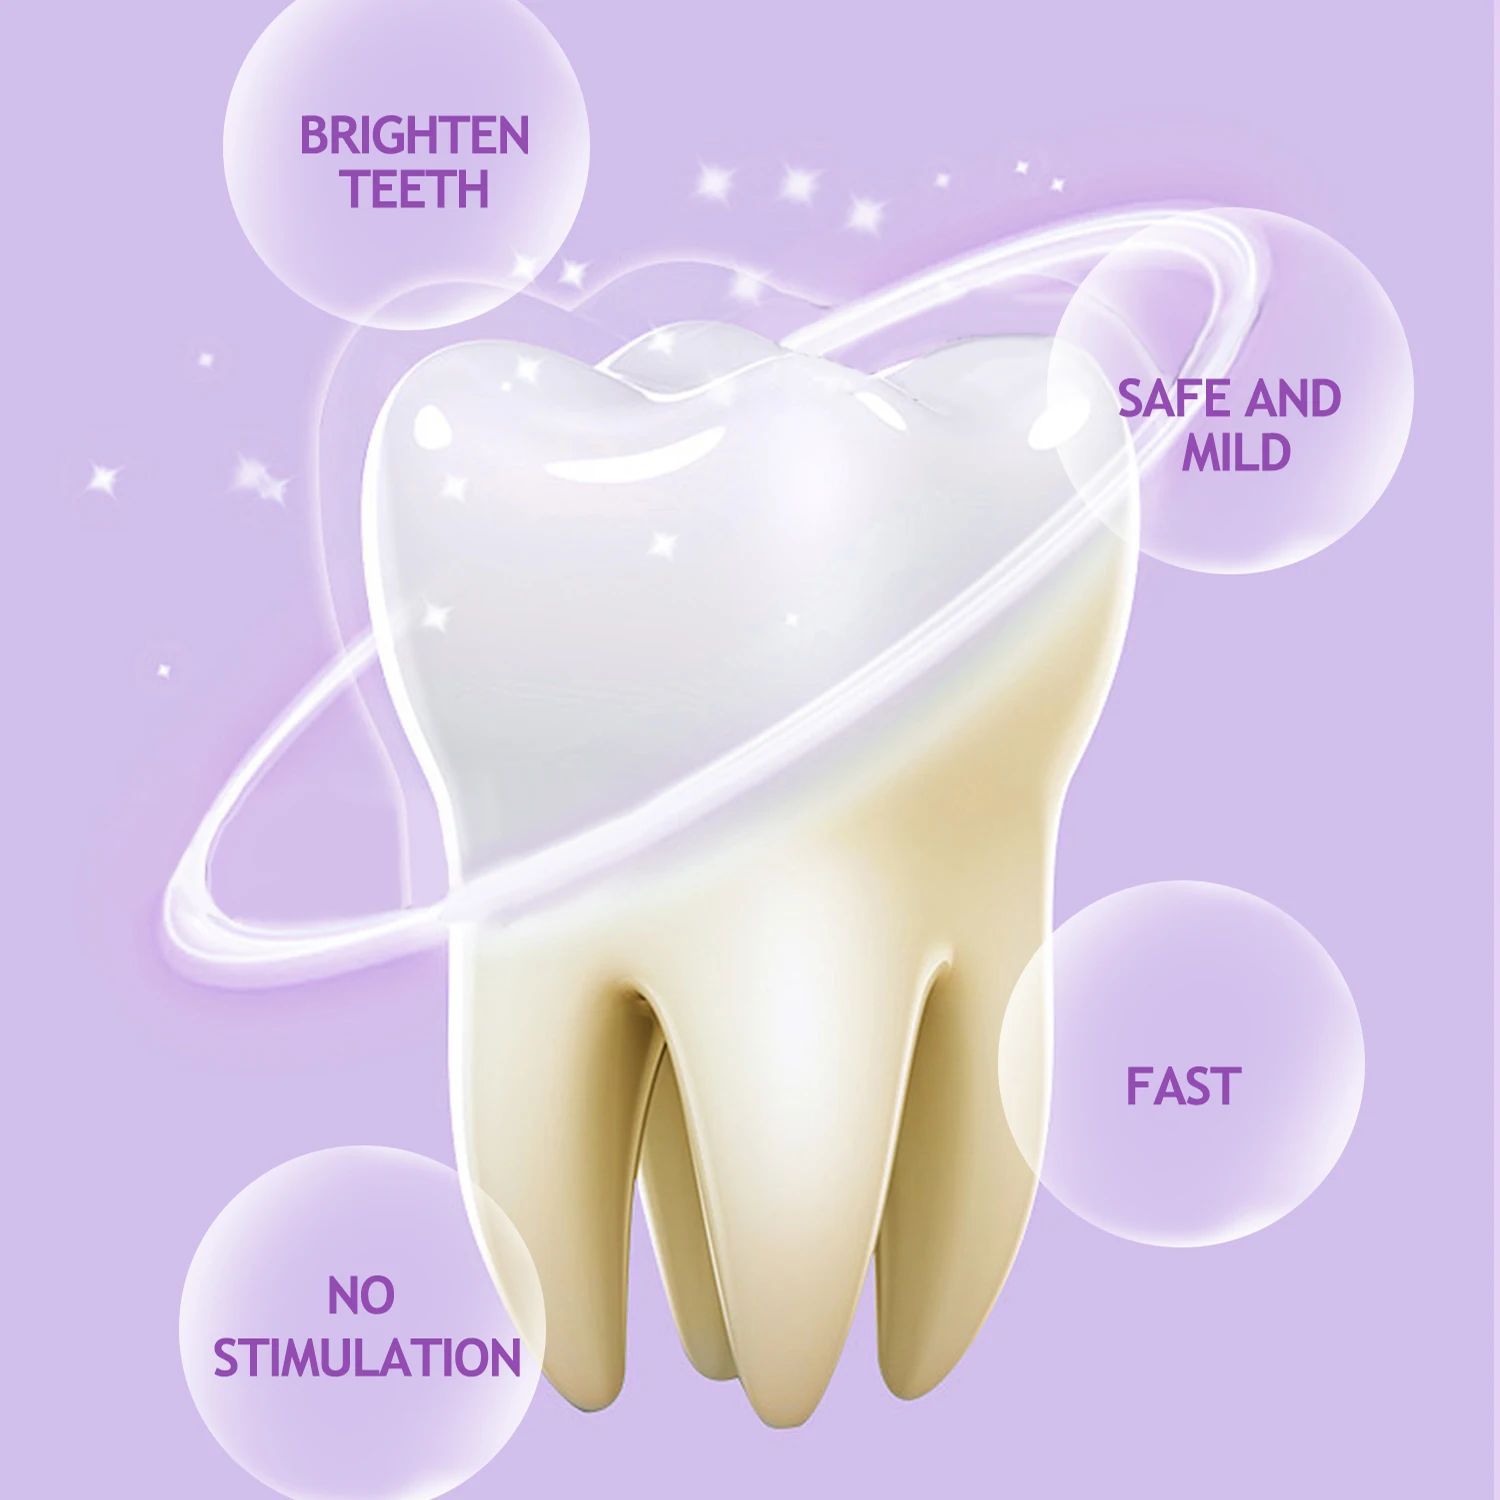 ผลิตภัณฑ์ฟอกสีฟันกำจัดคราบควันฟันเหลืองได้อย่างมีประสิทธิภาพทำความสะอาดคราบจุลินทรีย์ในช่องปาก